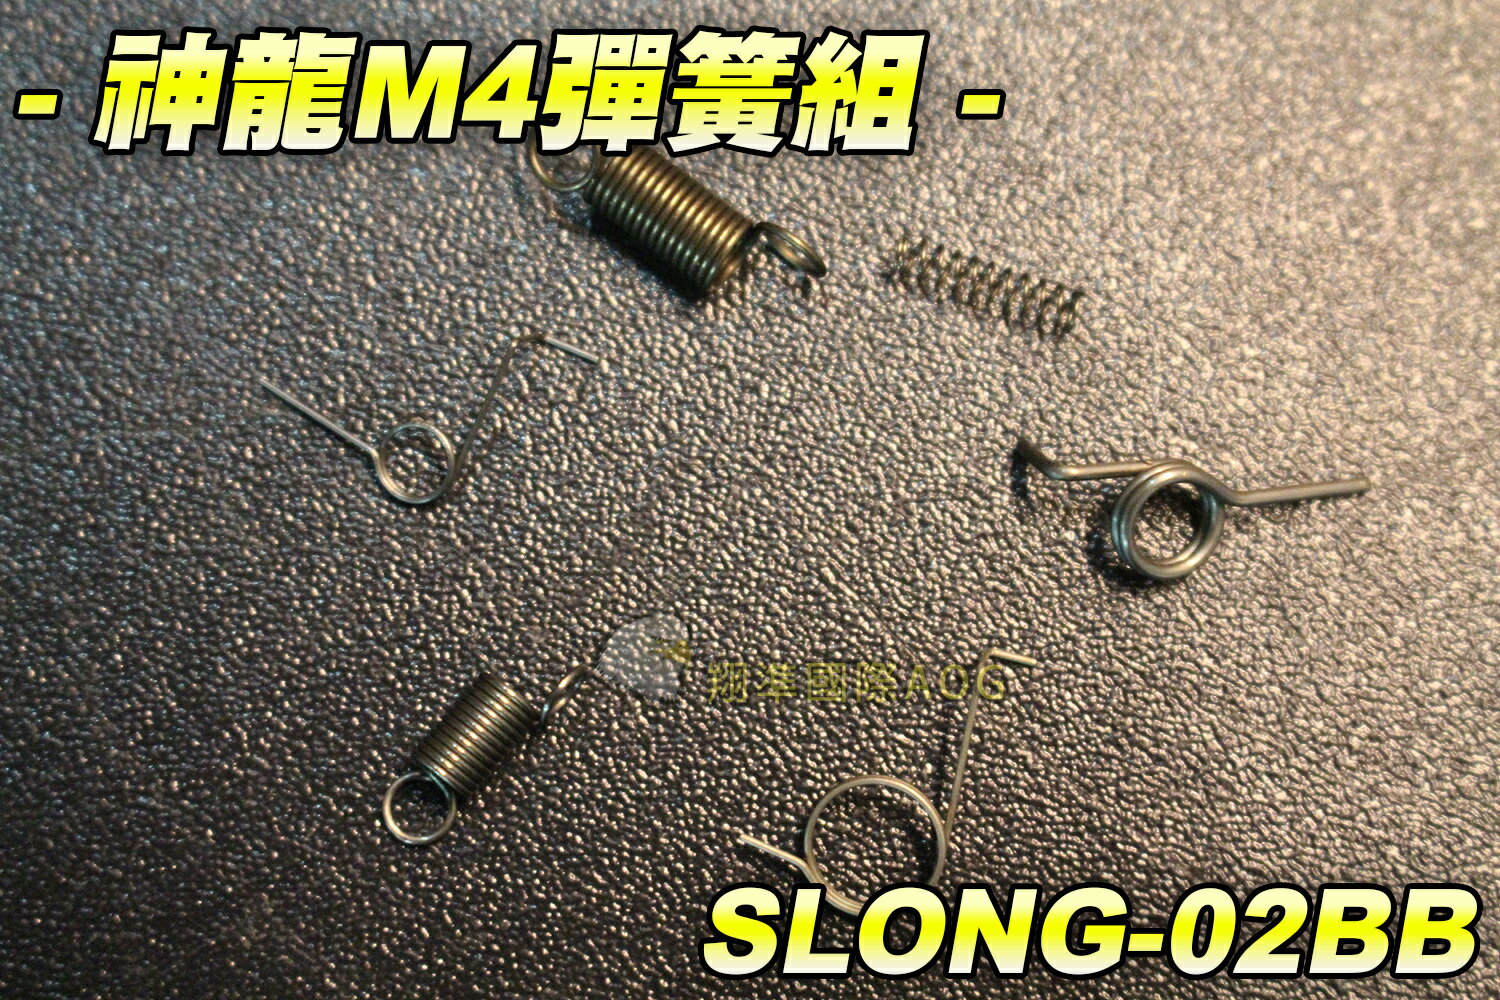 【翔準軍品AOG】神龍M4彈簧組 電動槍 瓦斯槍 M4突擊步槍 BB槍 瓦斯槍零件 步槍零件 生存遊戲 SLONG-02BB